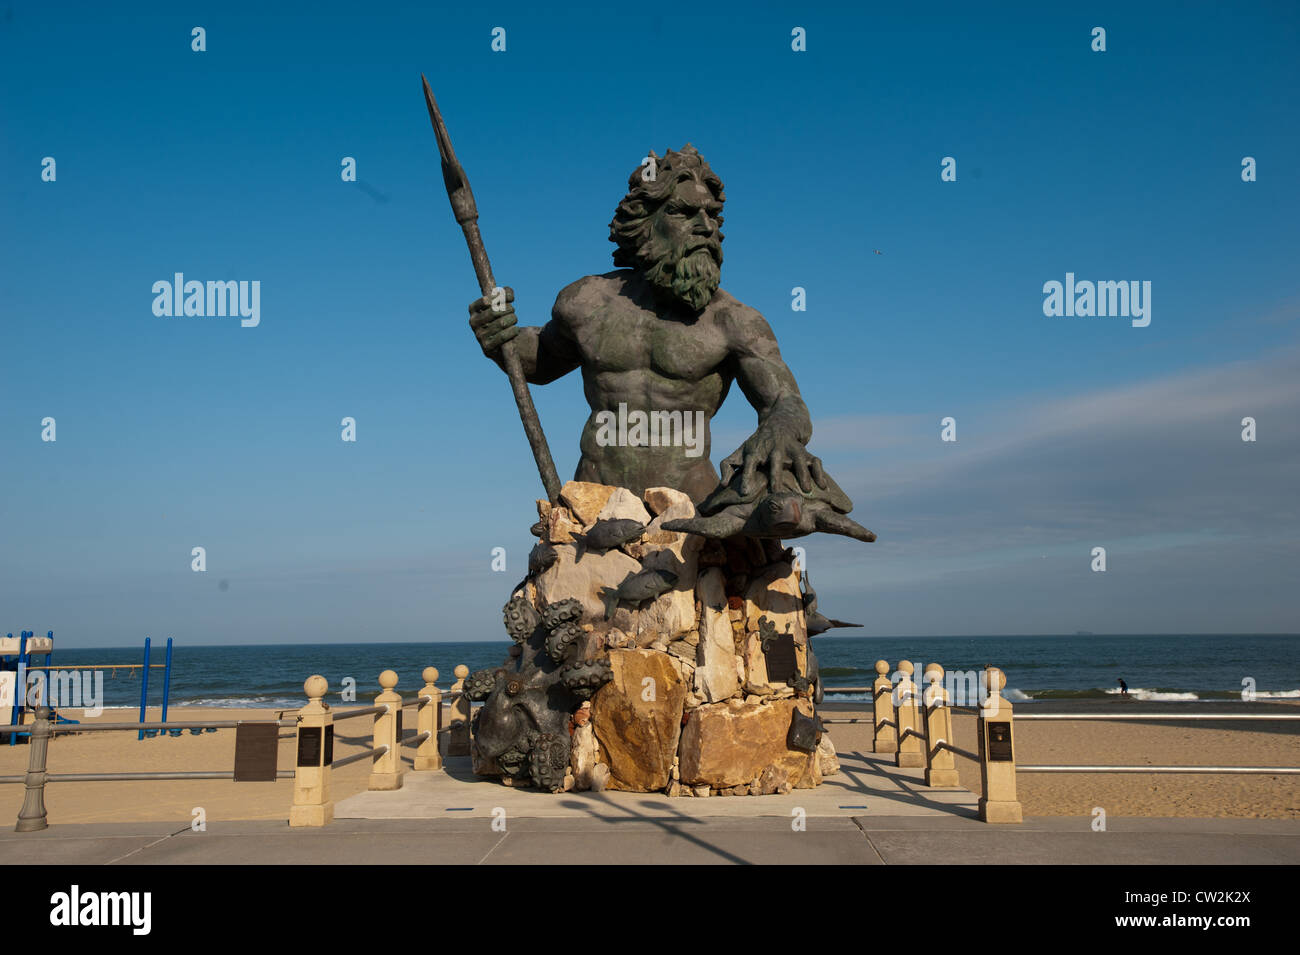 El Rey estatua de Neptuno, Virginia Beach Foto de stock